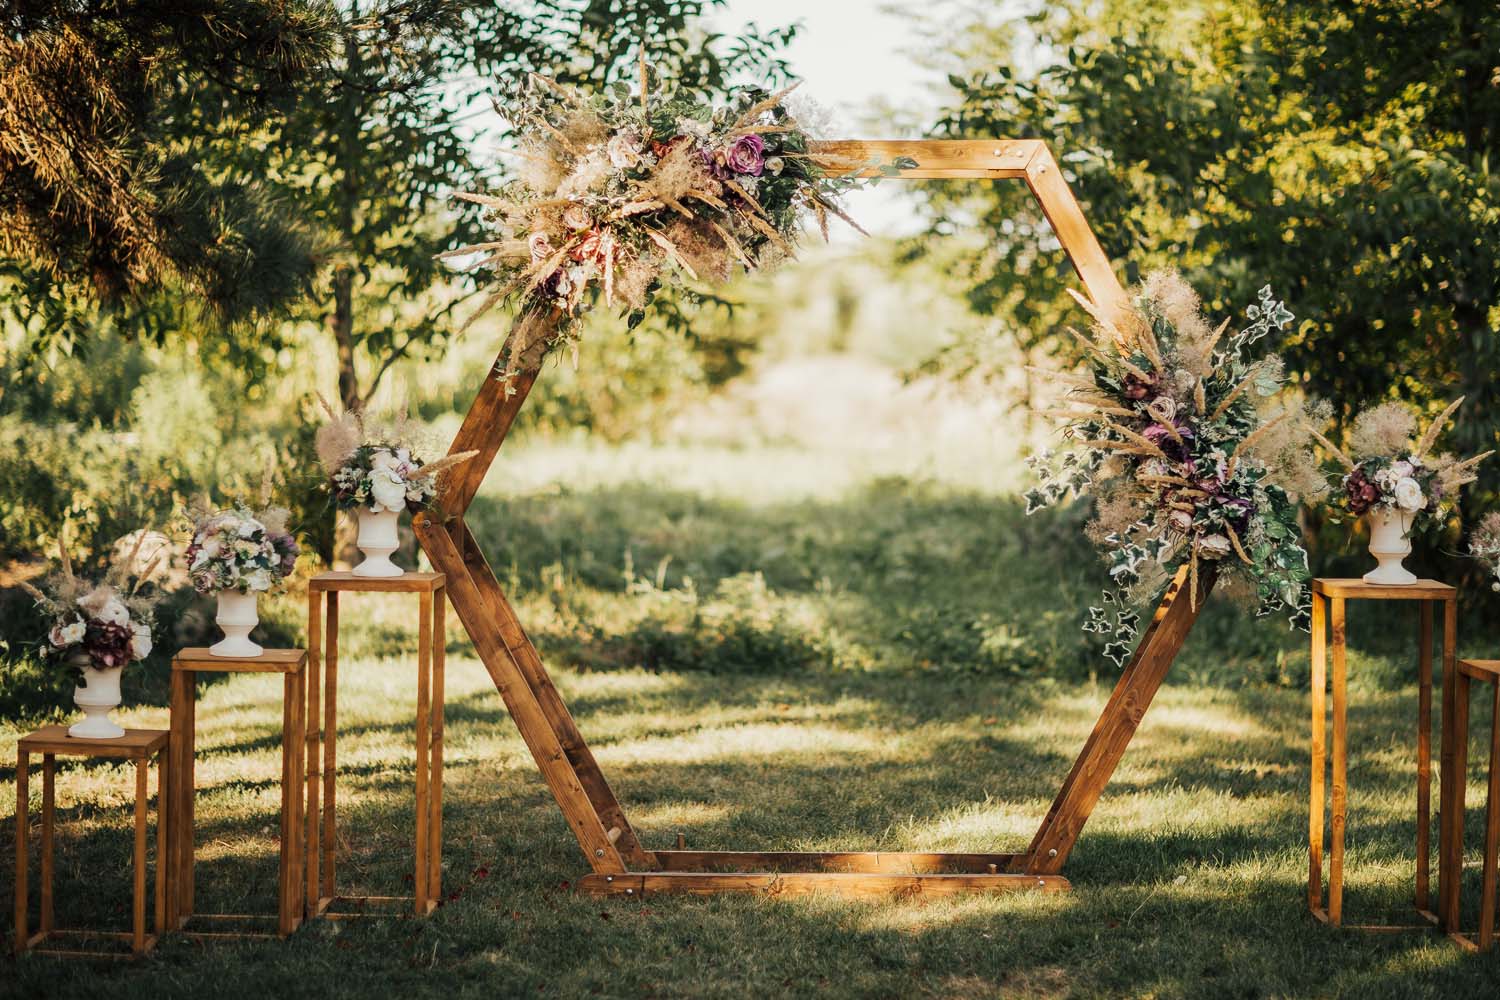 Decoration mariage exterieur jardin : trouvez des idées